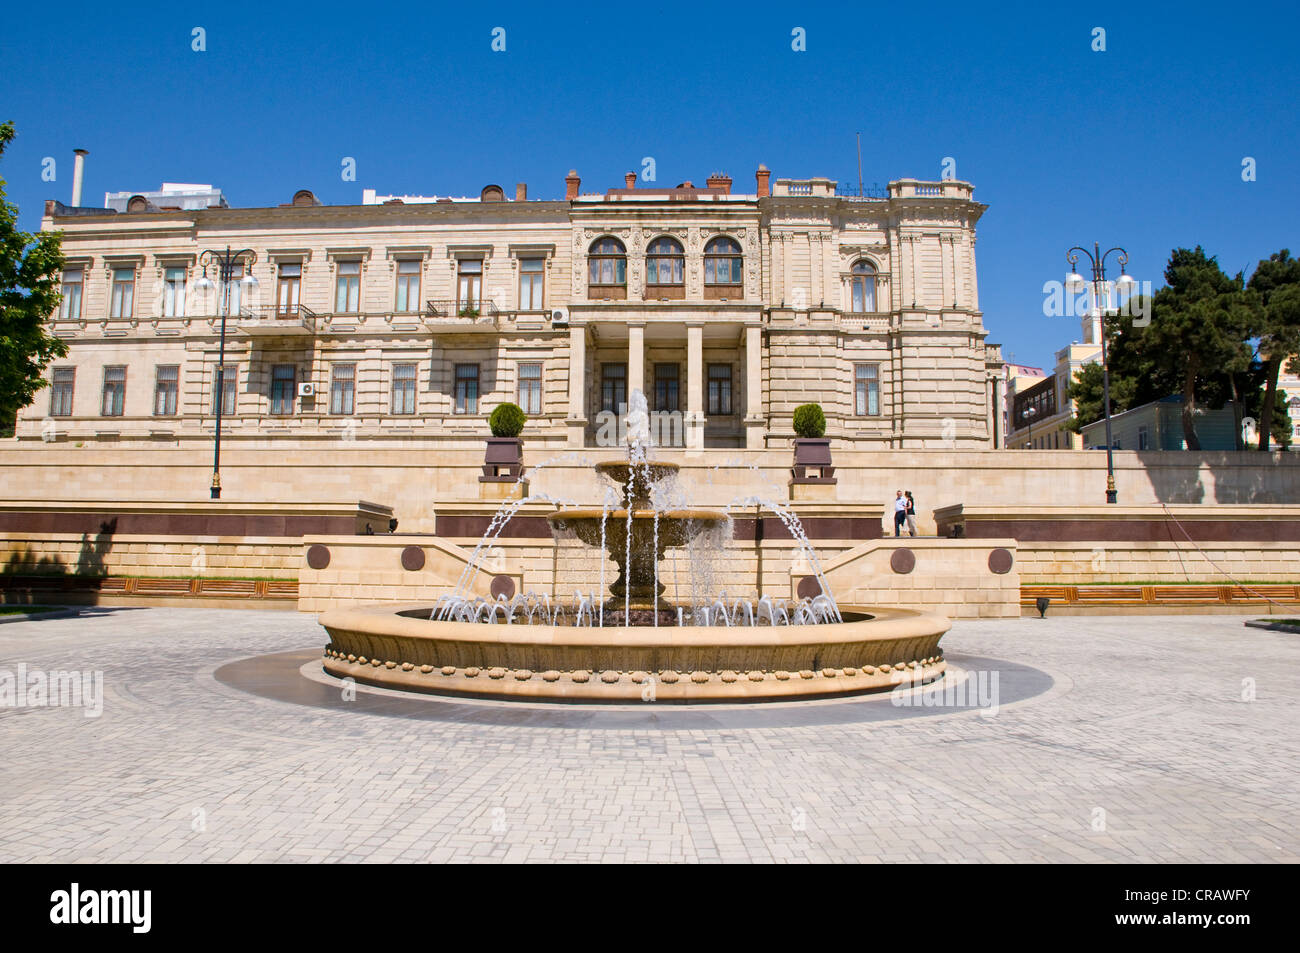 La place de la fontaine, Bakou, Azerbaïdjan, Caucase, Moyen-Orient Banque D'Images